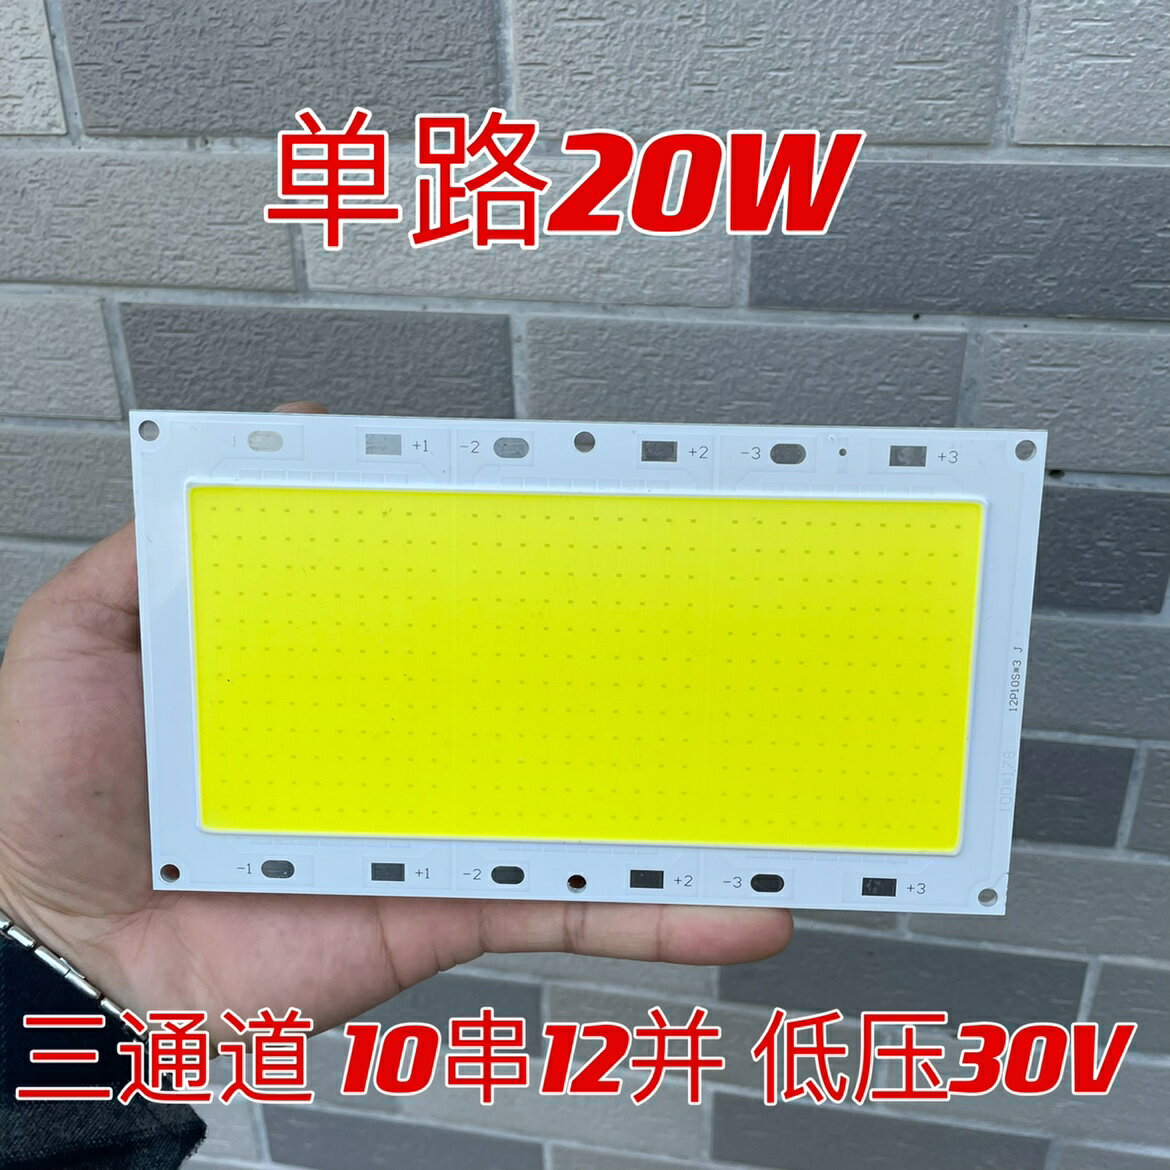 三路COB燈板 白光6000K 10串12并 低壓30V 20W 高品質燈板 2.0厚